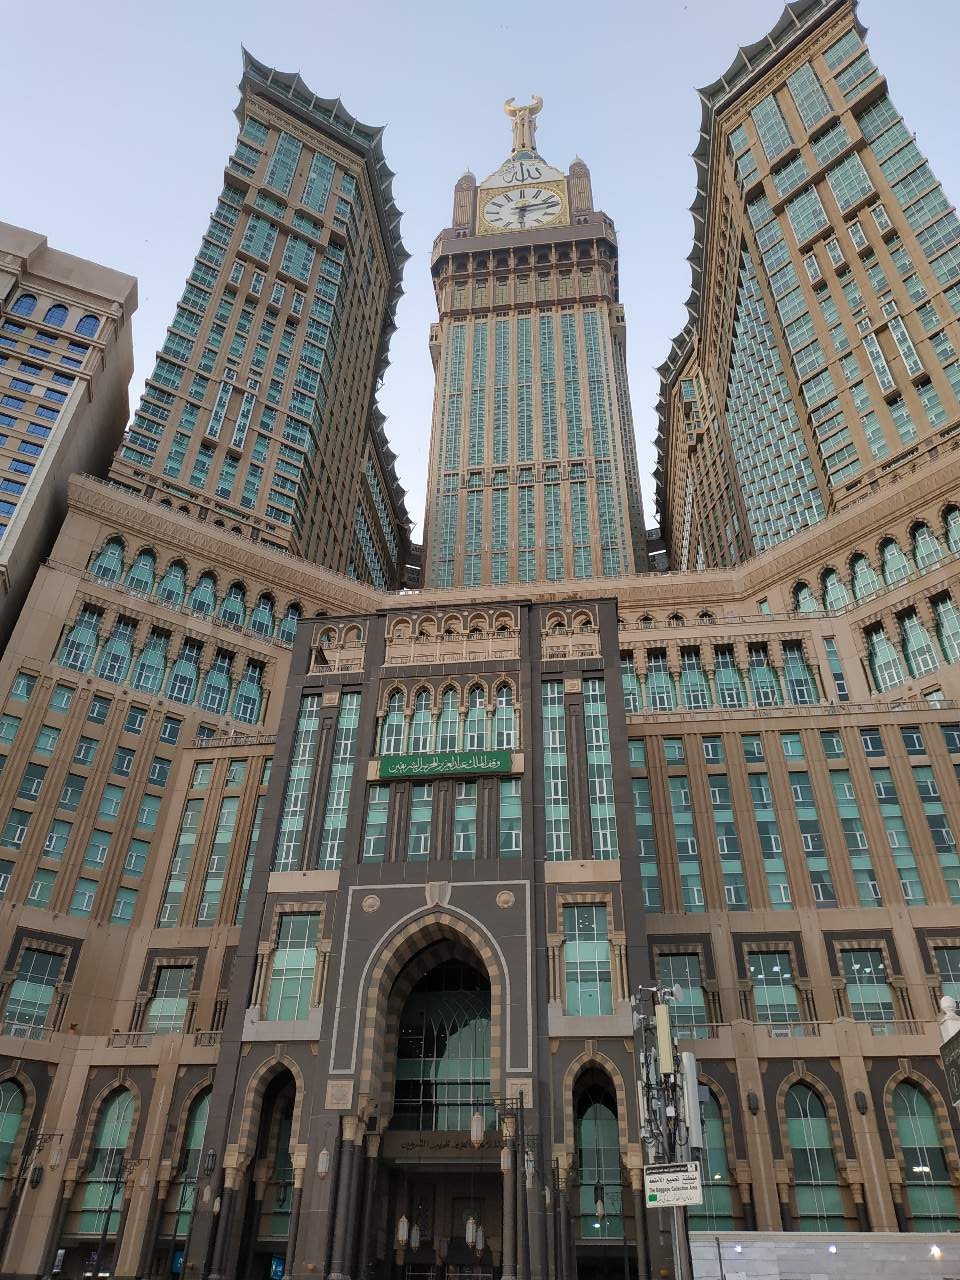 برج الساعة مكة